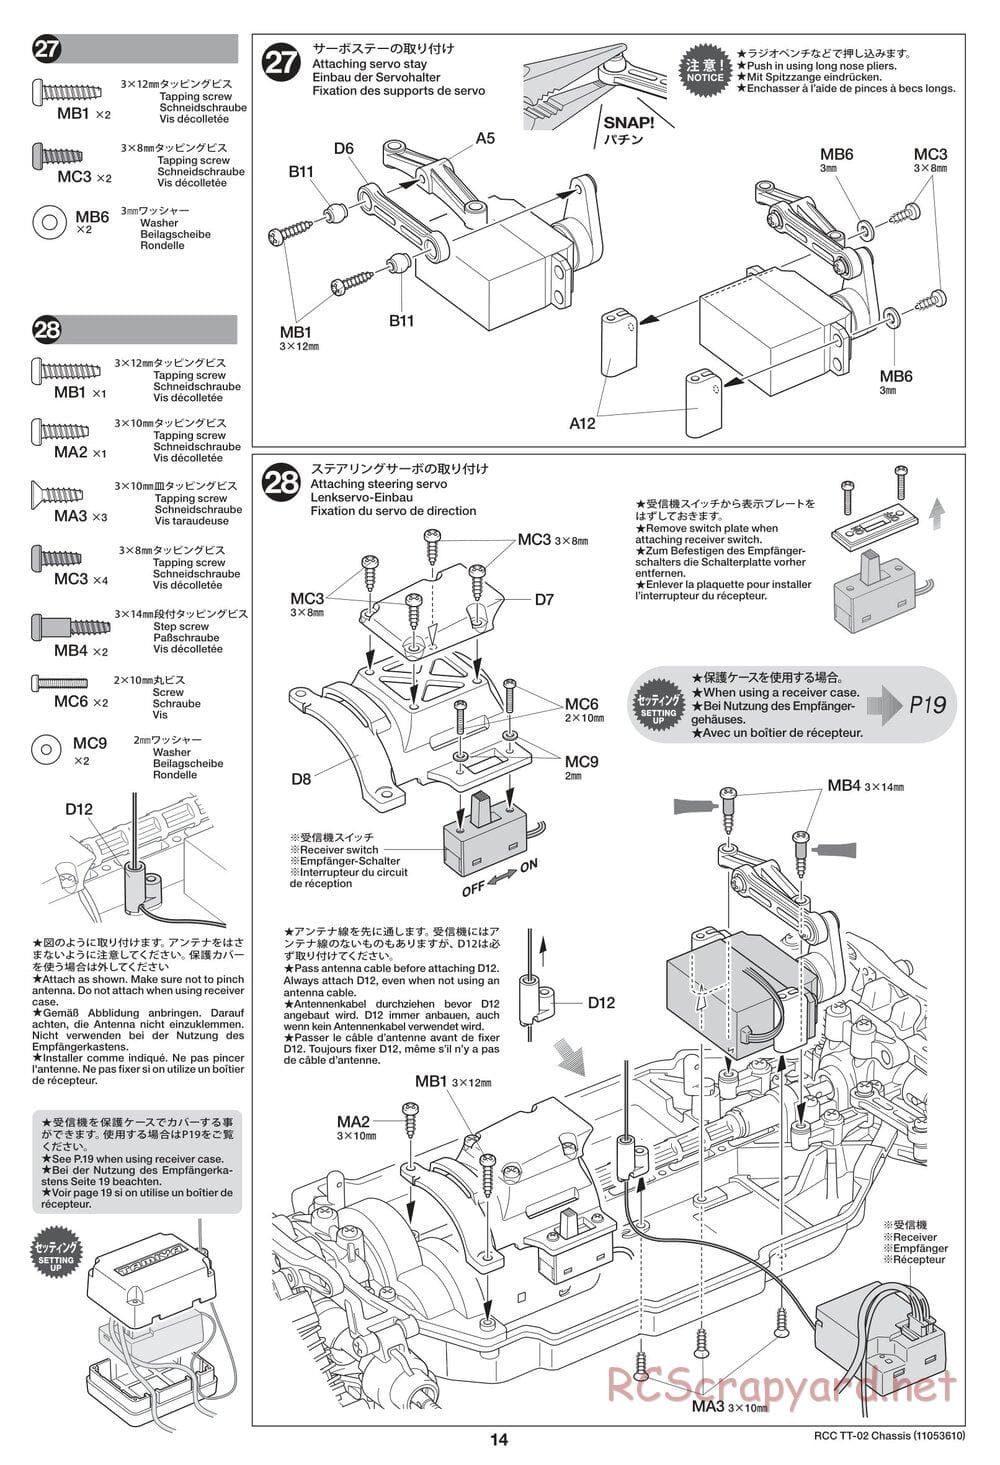 Tamiya - TT-02 Chassis - Manual - Page 14